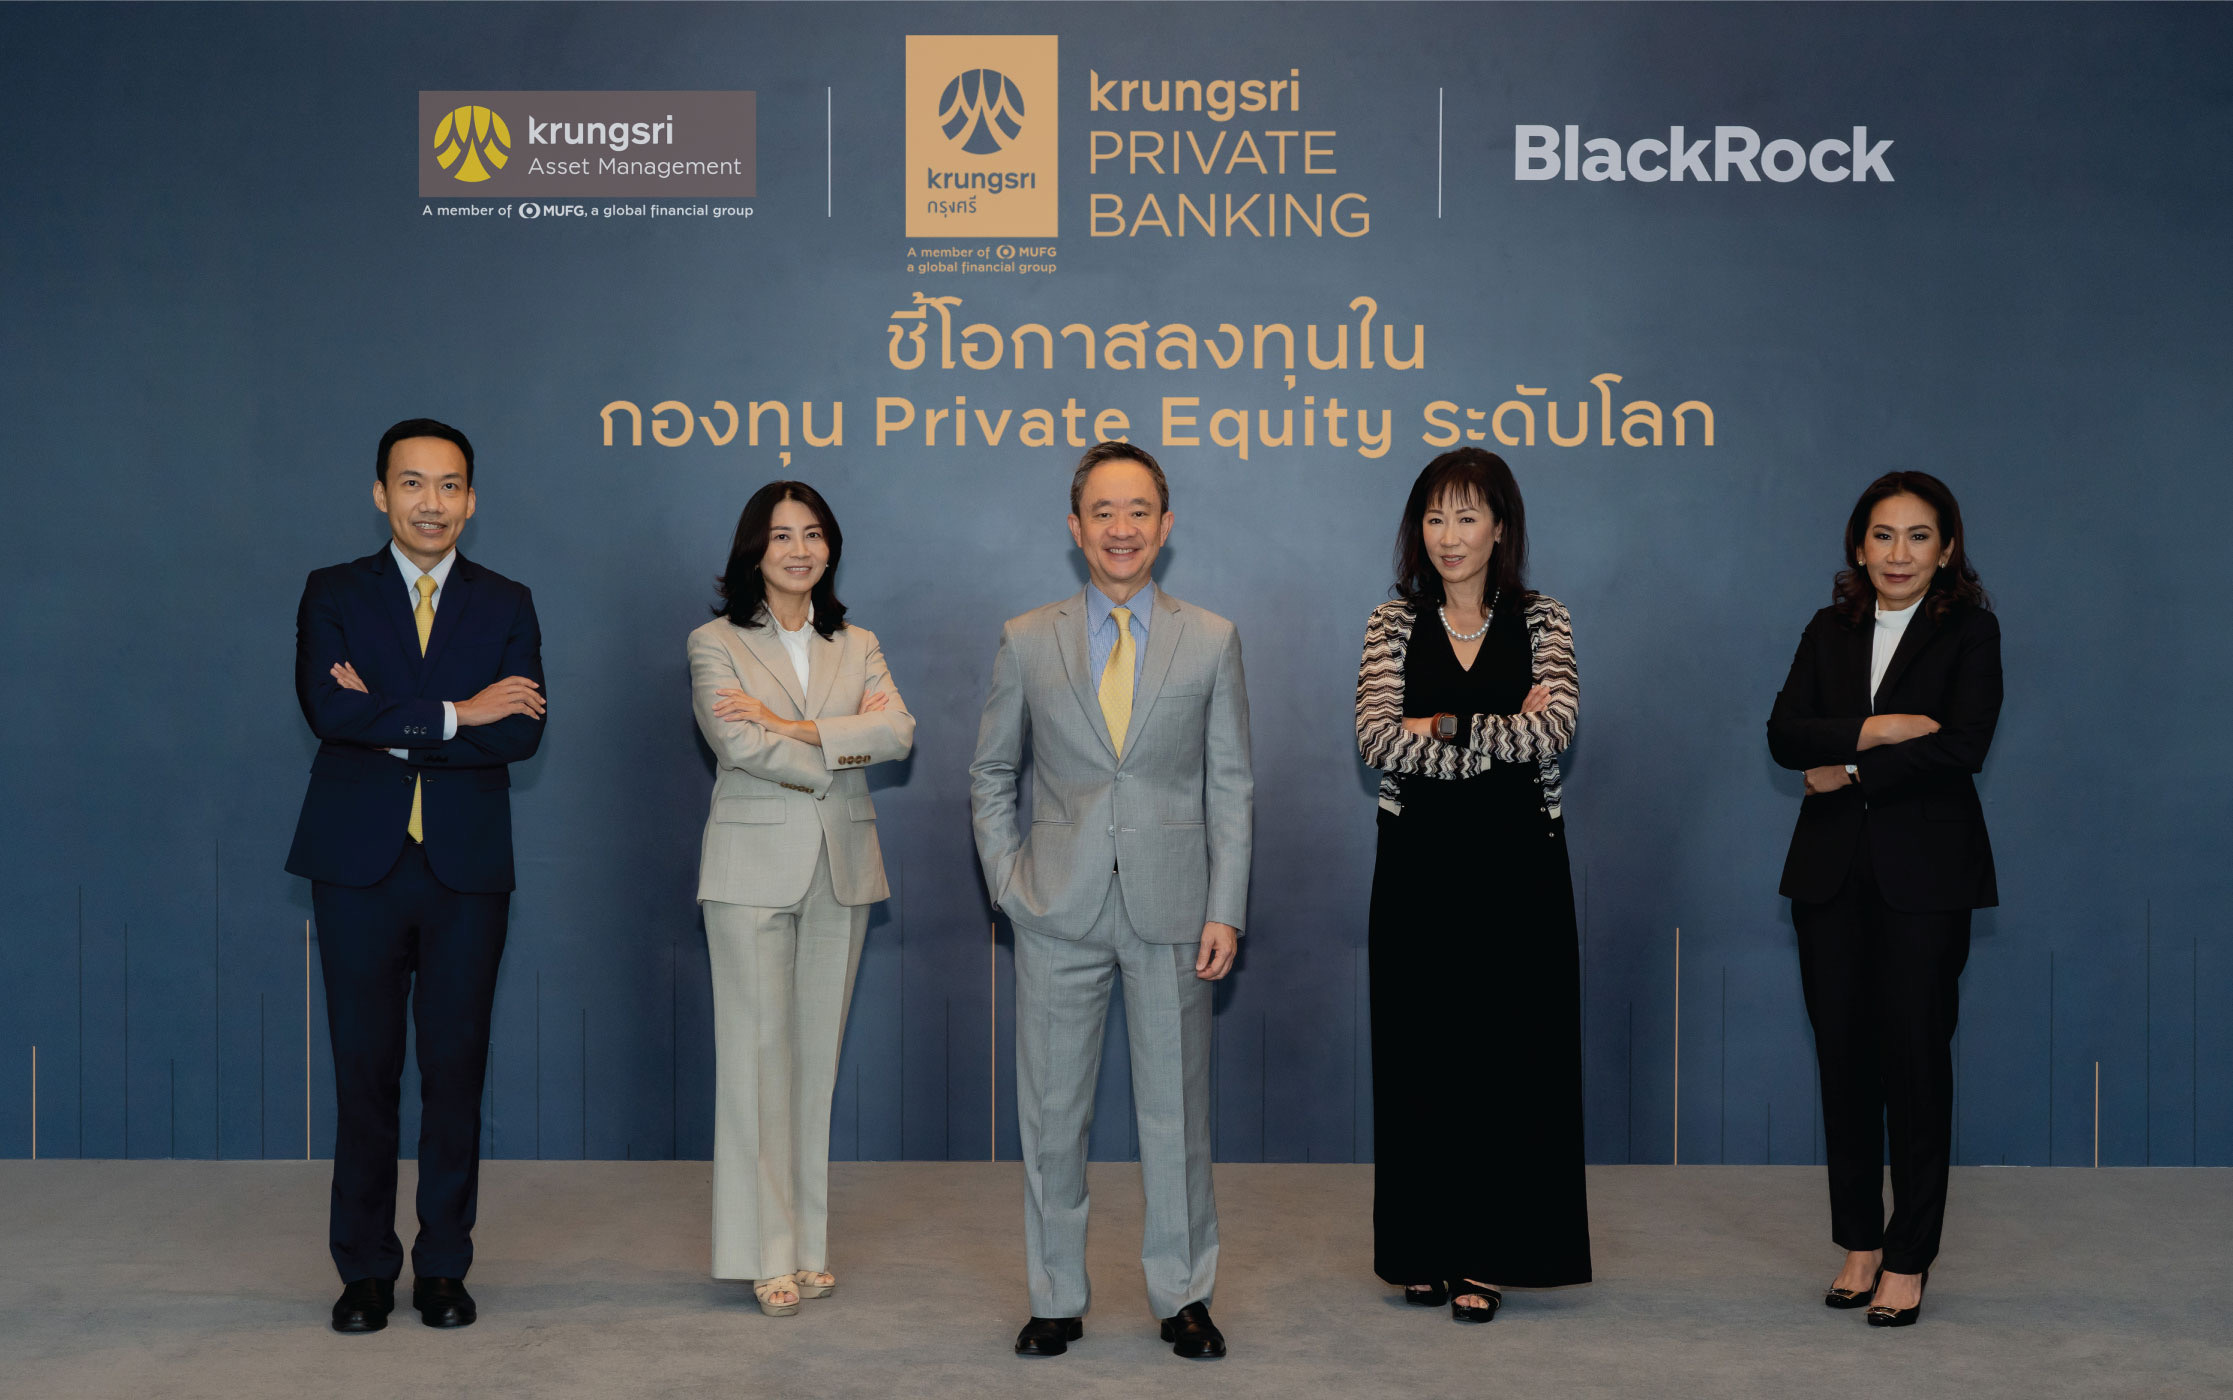 กรุงศรี จับมือ แบล็คร็อค จัดสัมมนาพิเศษ “ชี้โอกาสลงทุนในกองทุน Private Equity ระดับโลก”